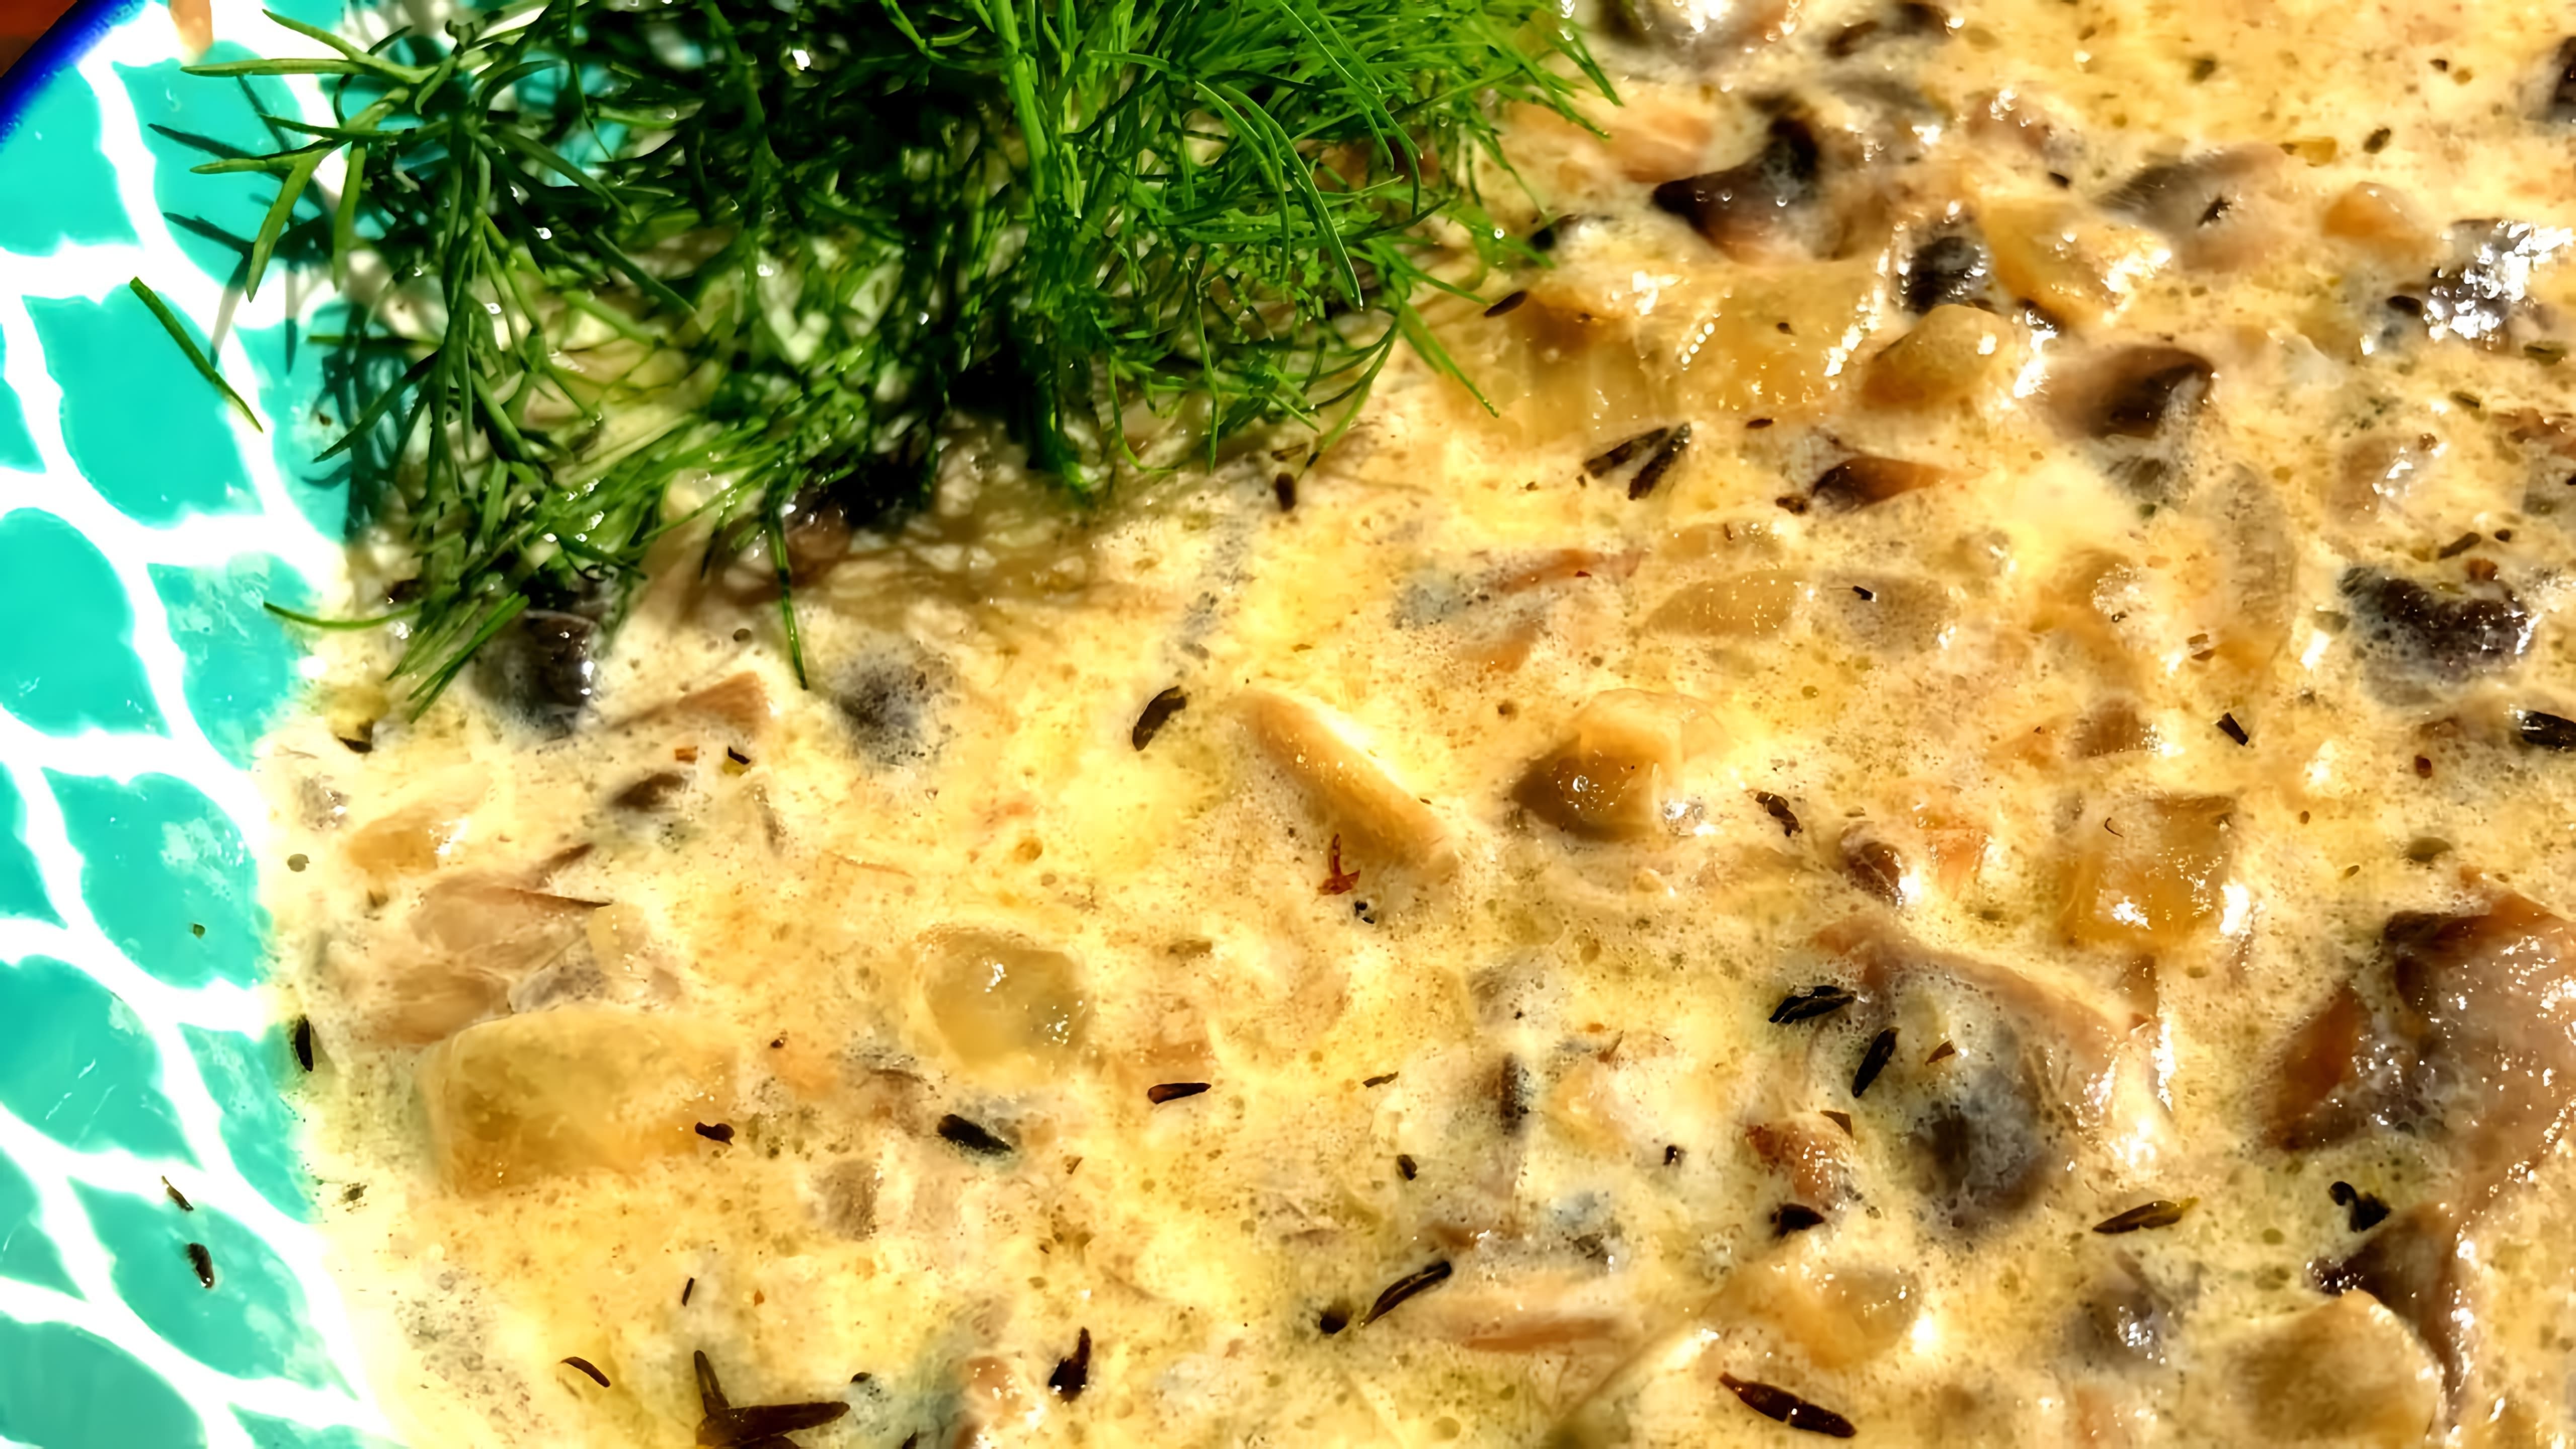 В этом видео демонстрируется процесс приготовления грибного соуса из шампиньонов